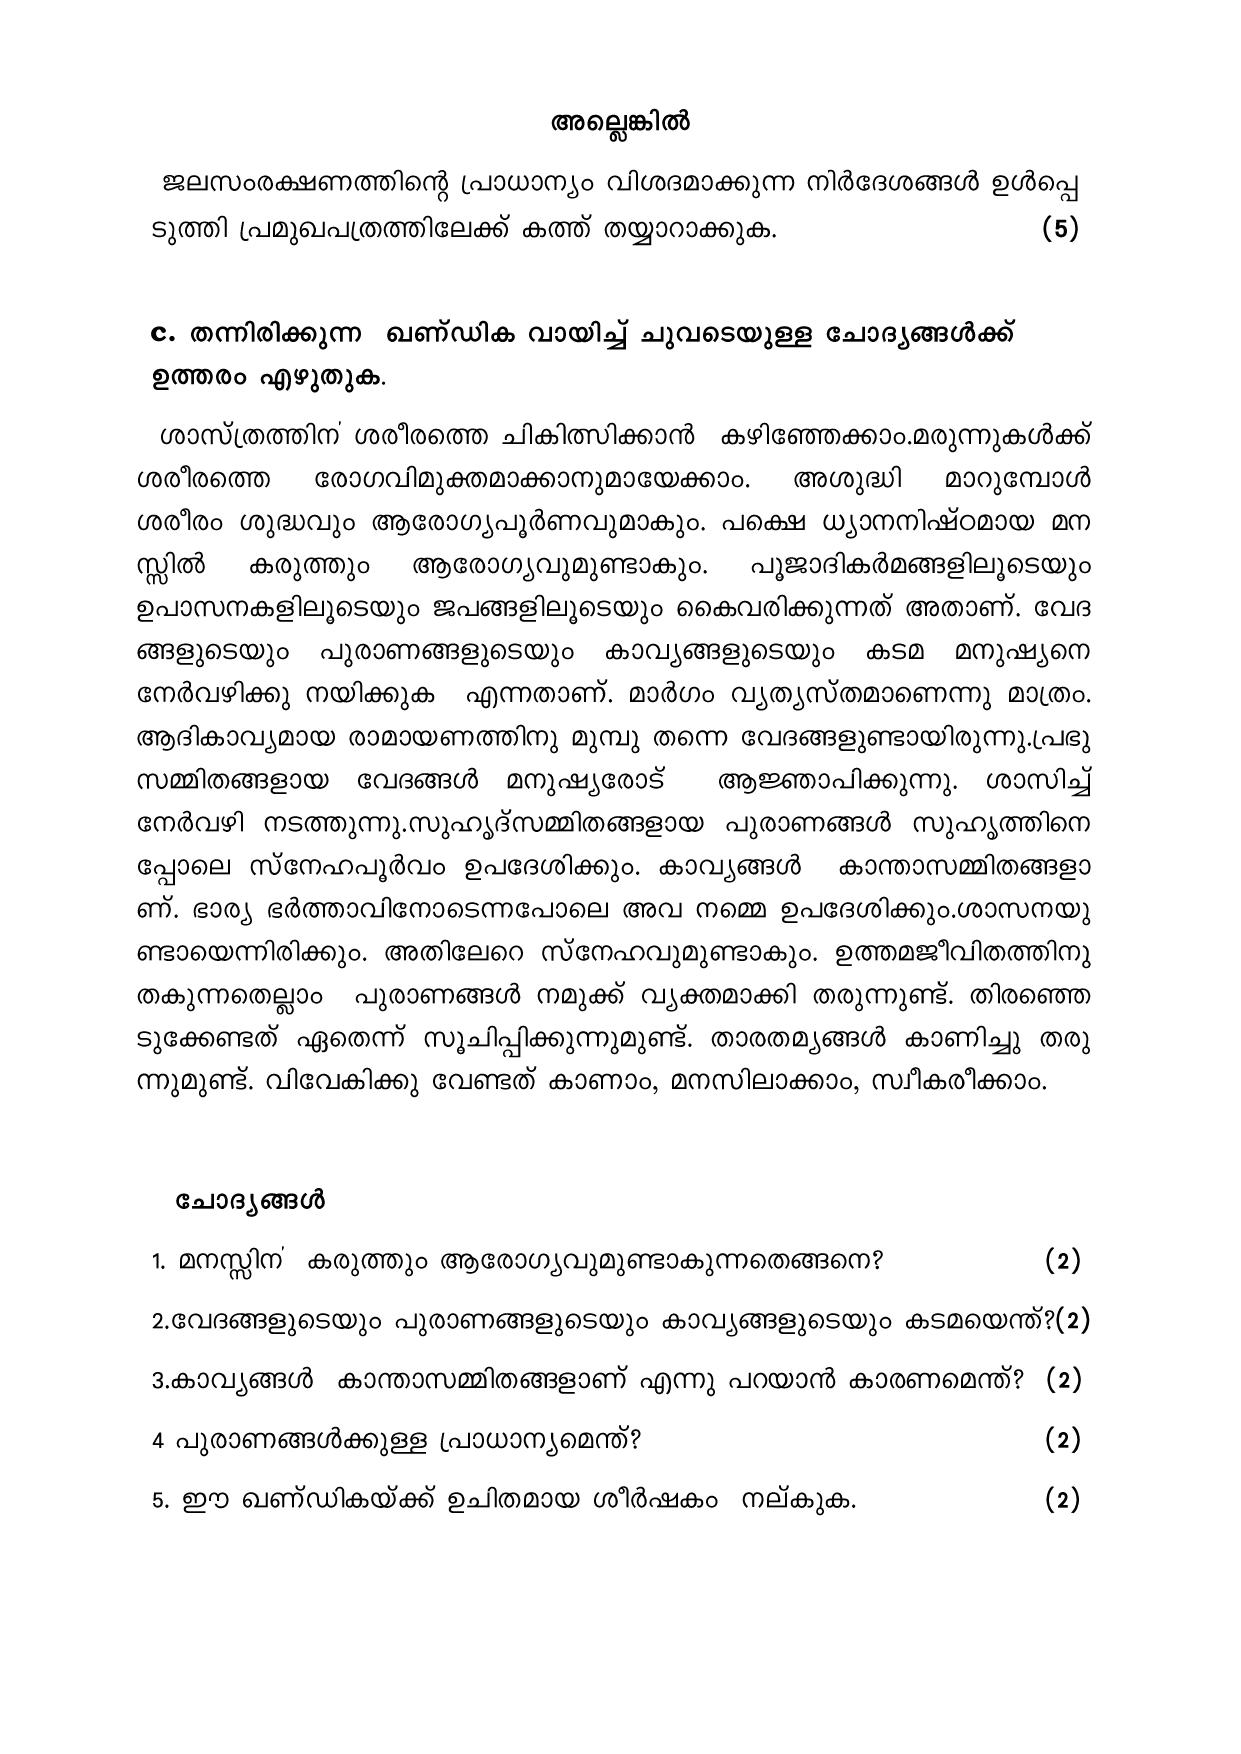 CBSE Class 12 Malayalam -Sample Paper 2019-20 - Page 2